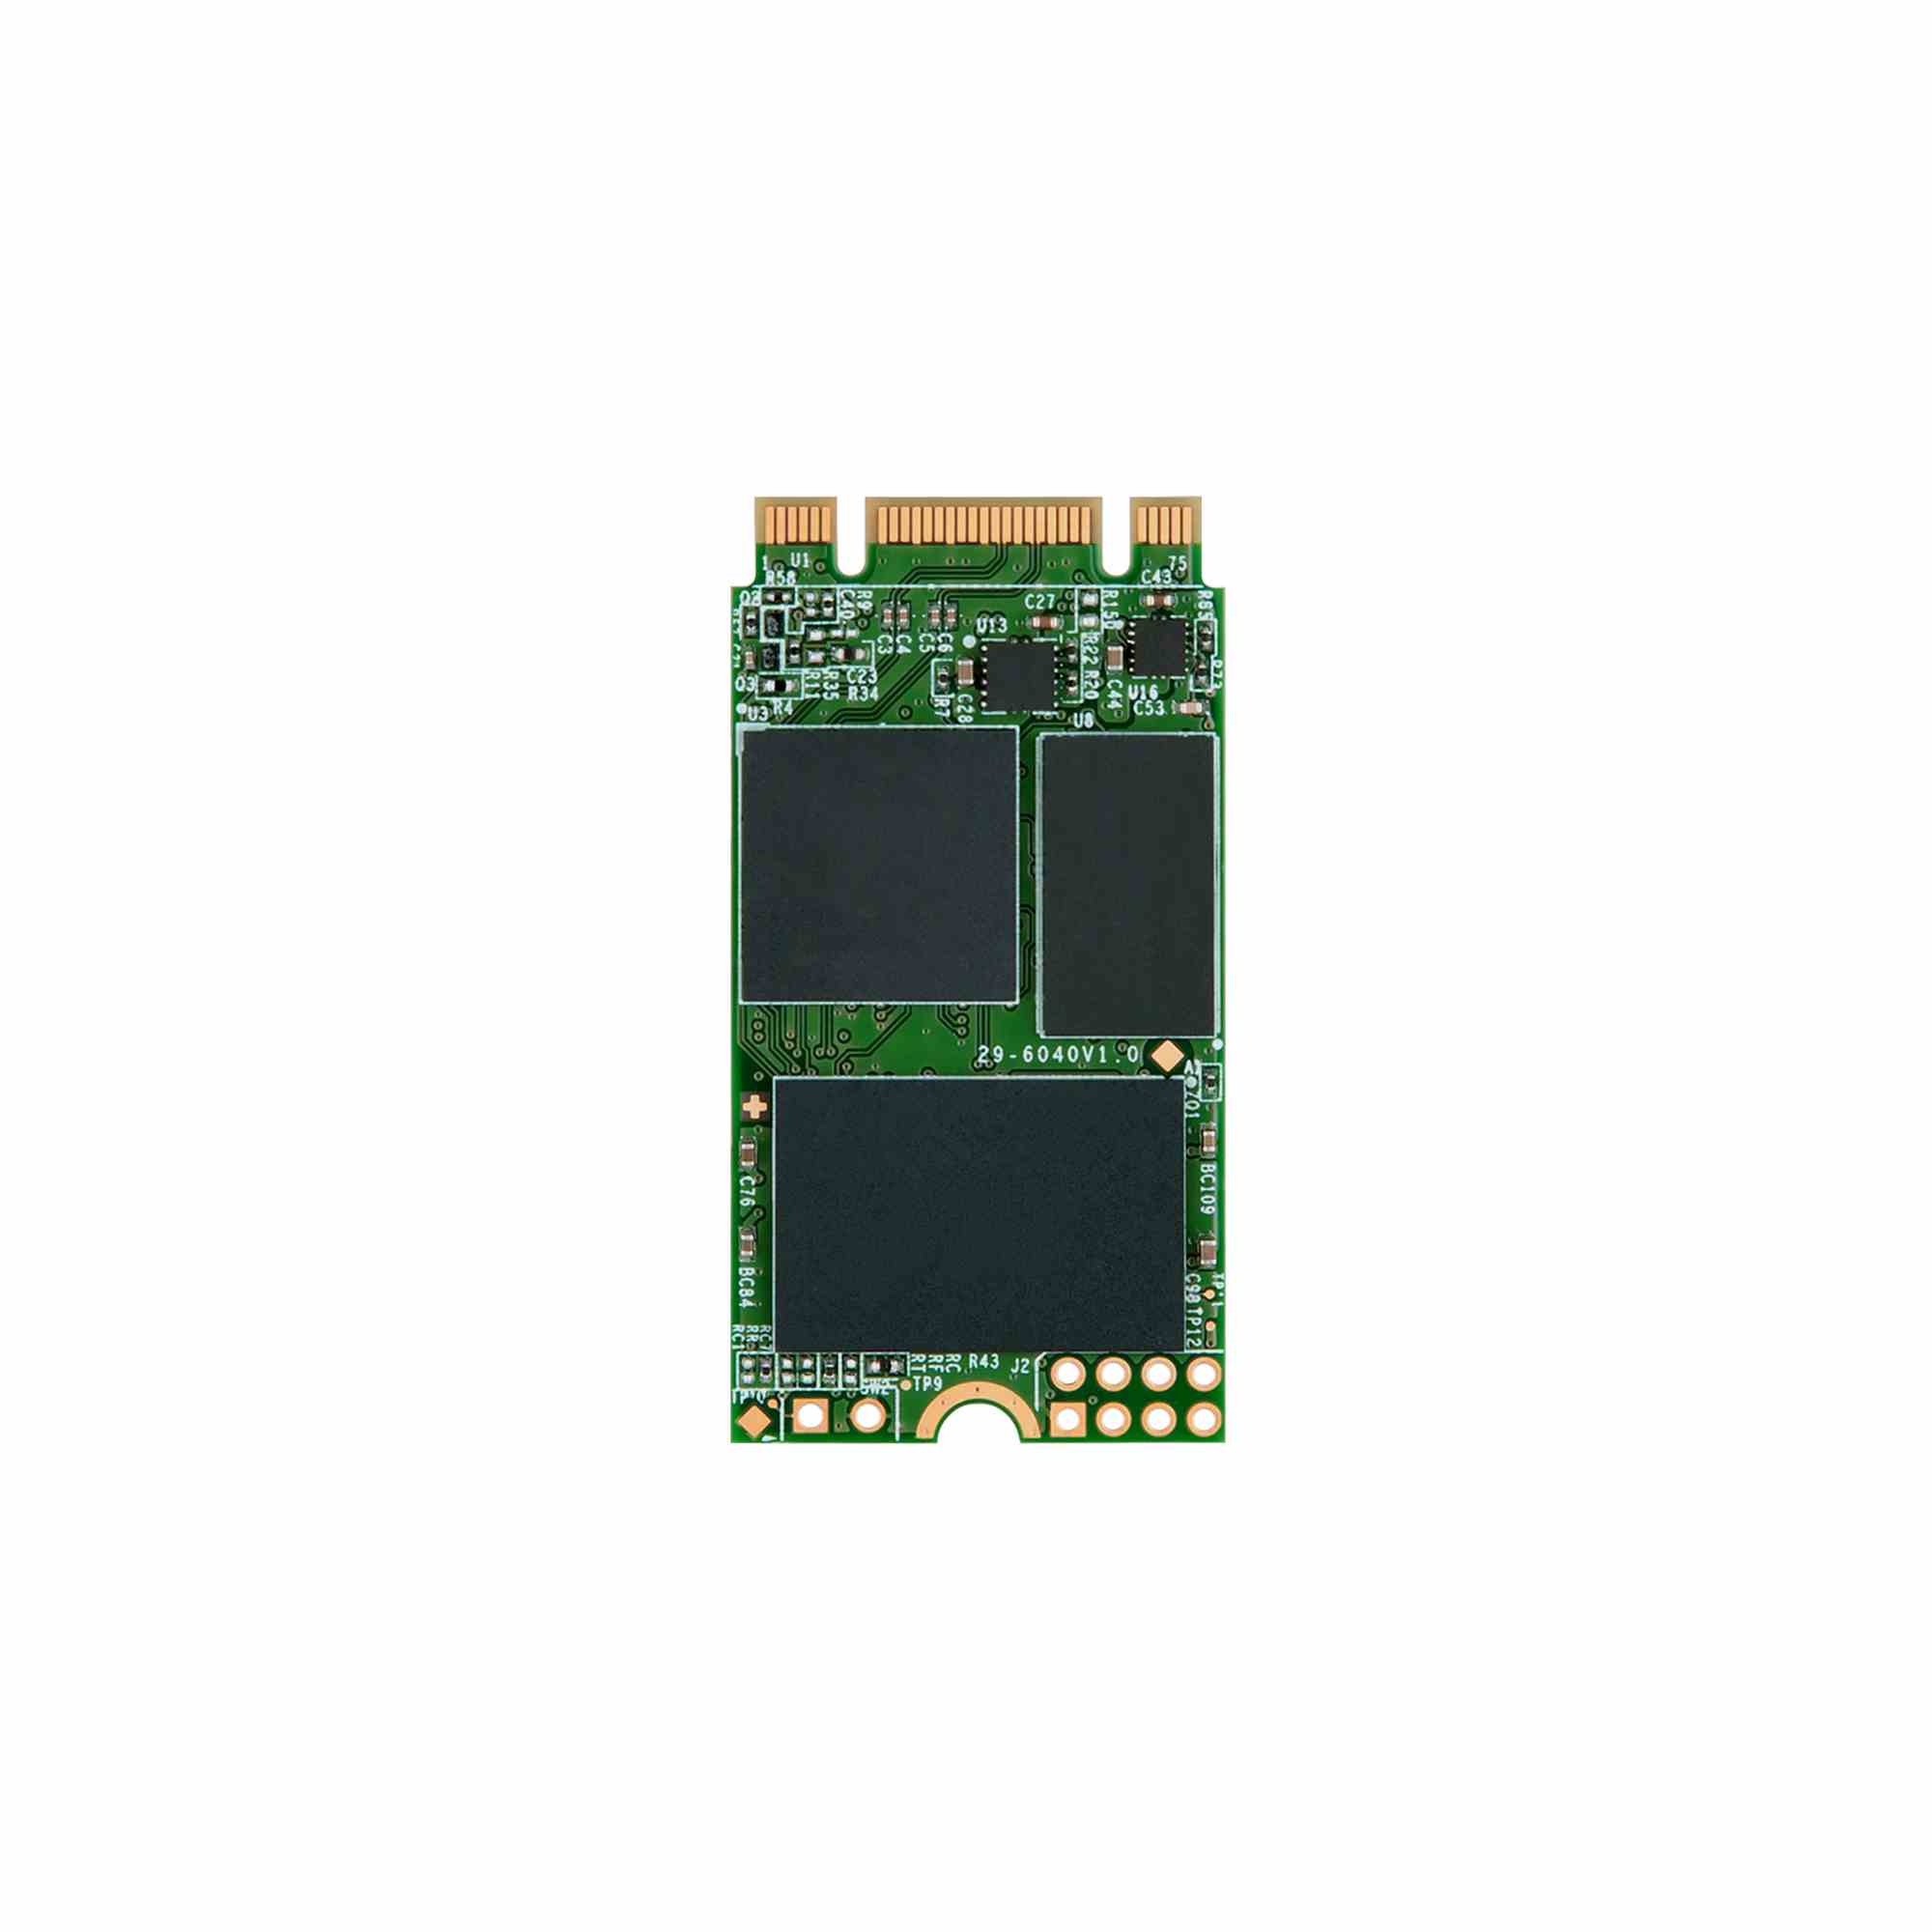 TRANSCEND Industrial SSD MTS420 480GB, M.2 2242, SATA III 6 Gb/s, TLC0 